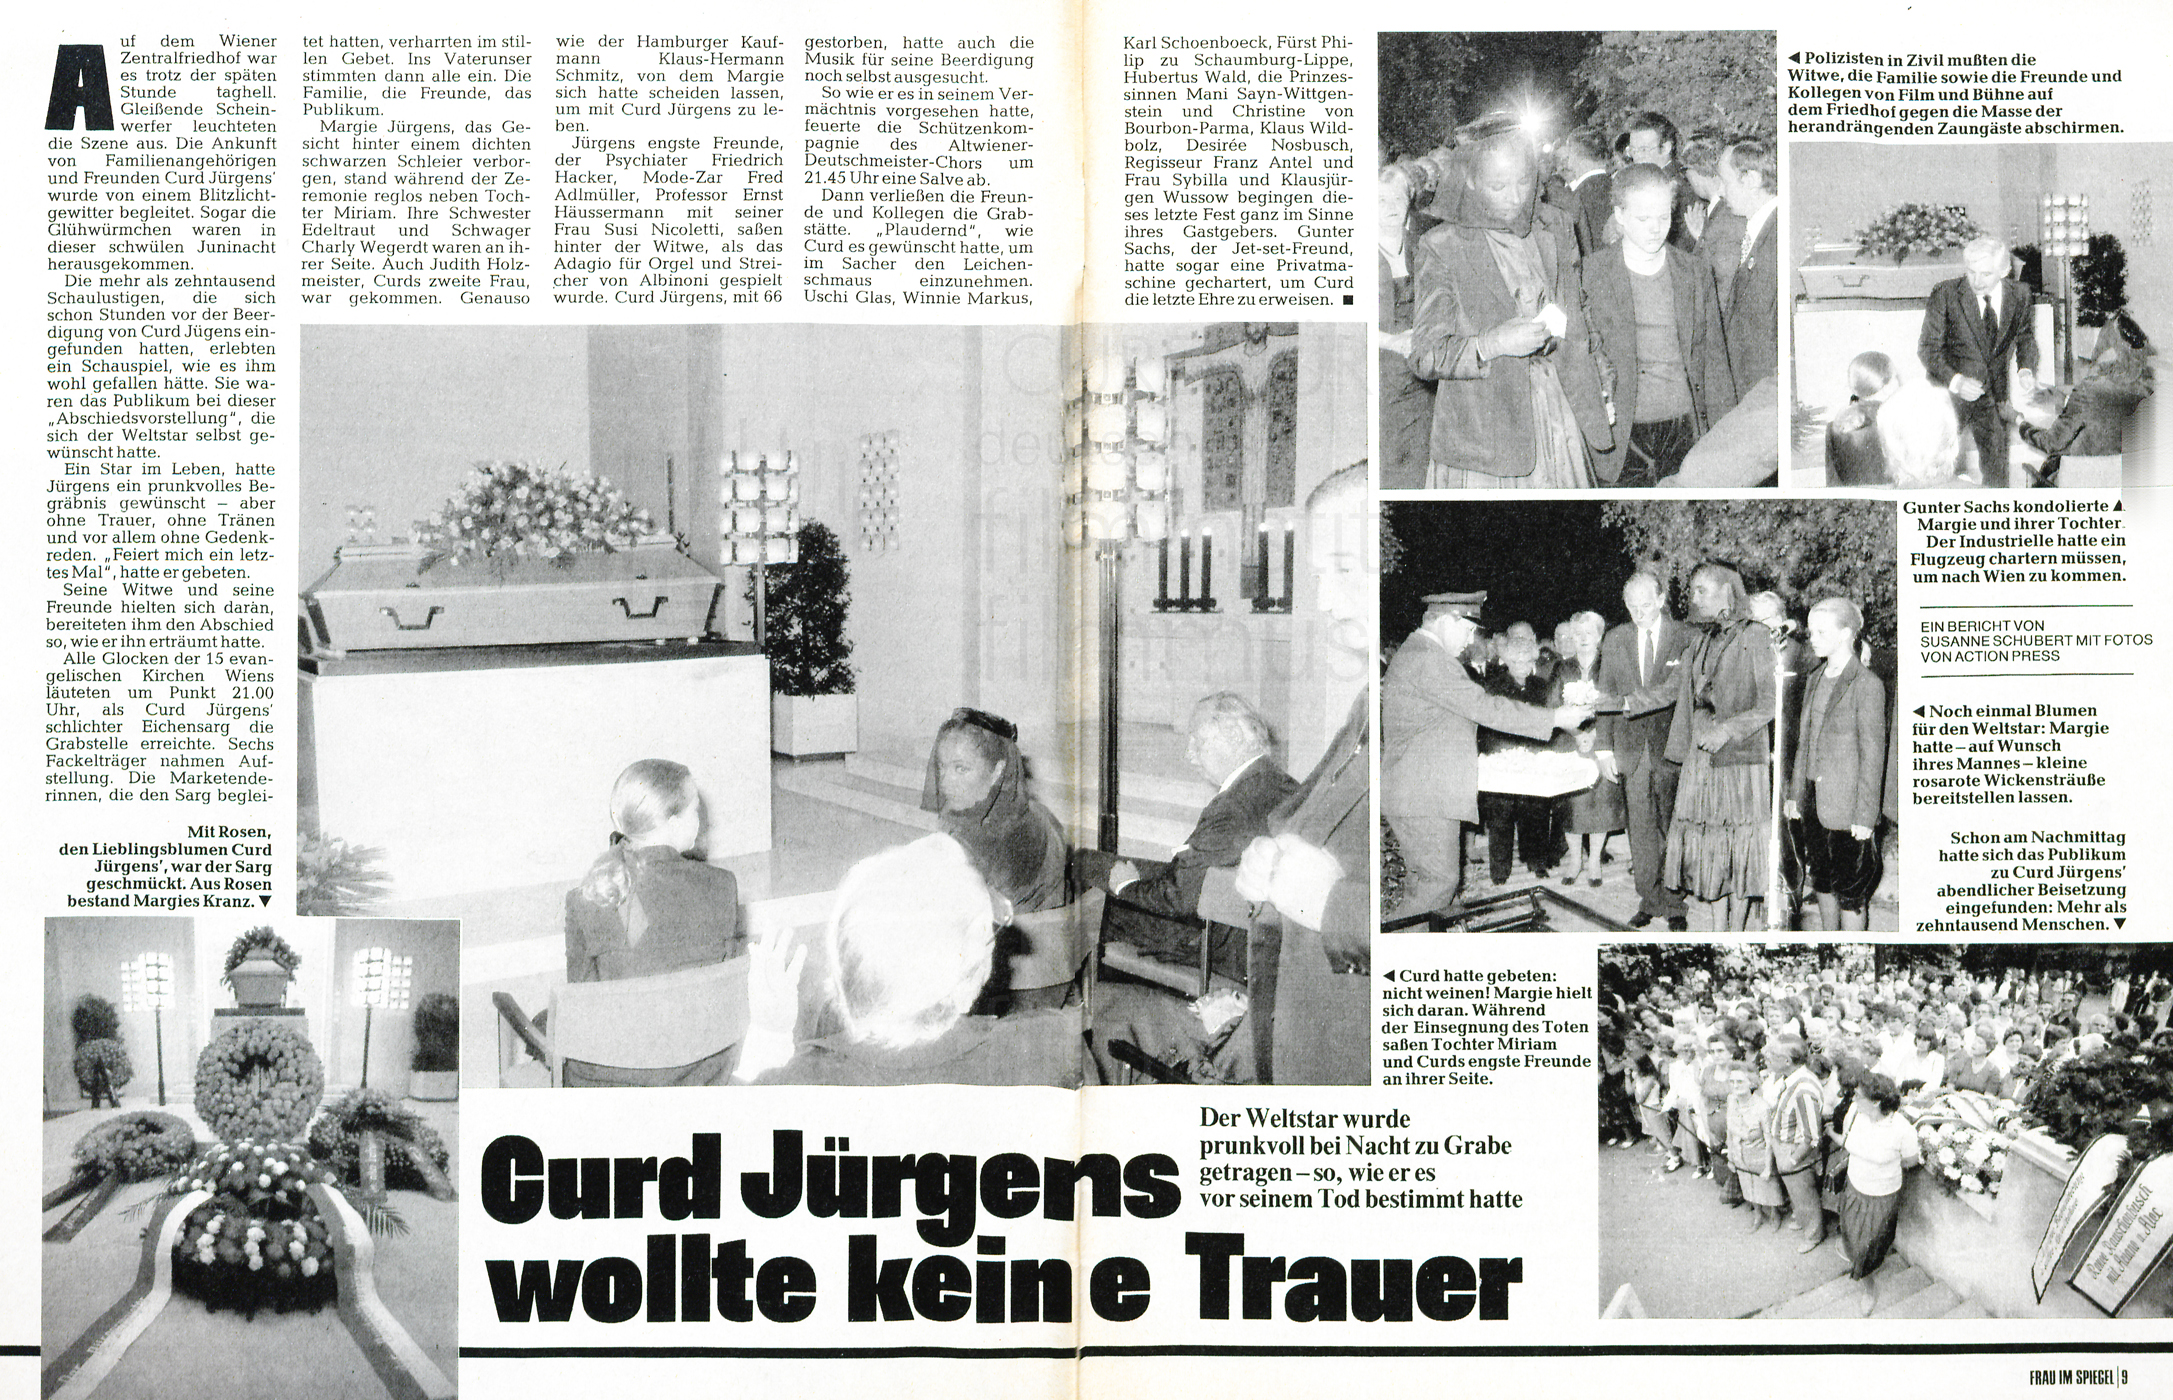 Frau im Spiegel: „Curd Jürgens wollte keine Trauer“, Nr. 27, 1982